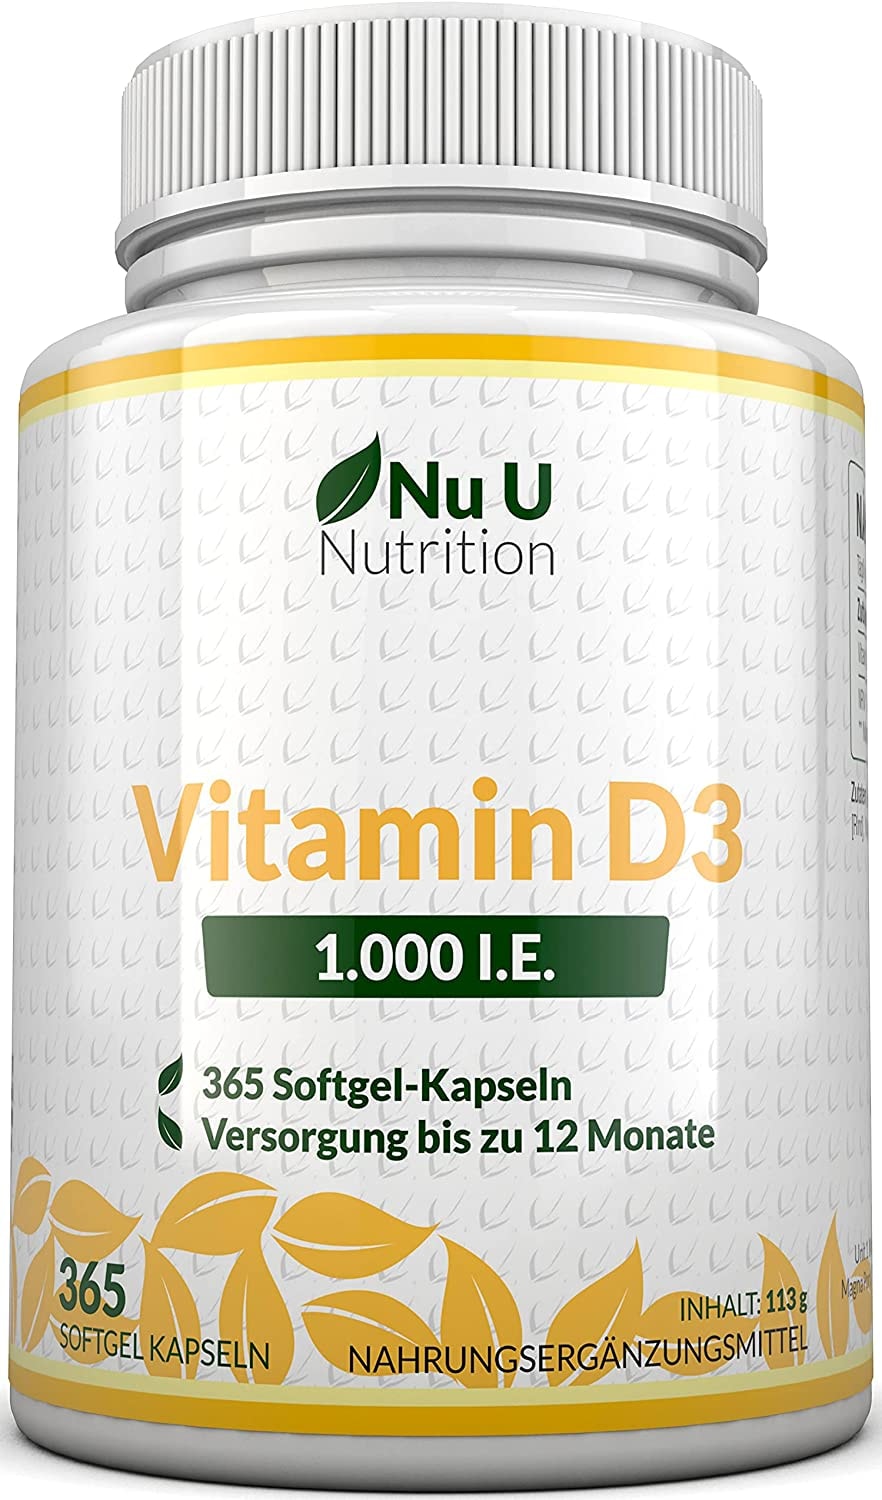 Nu U Vitamin D3 1.000 I.E. hochdosiert | für Knochen, Zähne & Immunsystem | Jahresversorgung | 100% Geld-zurück-Garantie | 365 Softgel-Kapseln | Nahrungsergänzungsmittel von Nu U